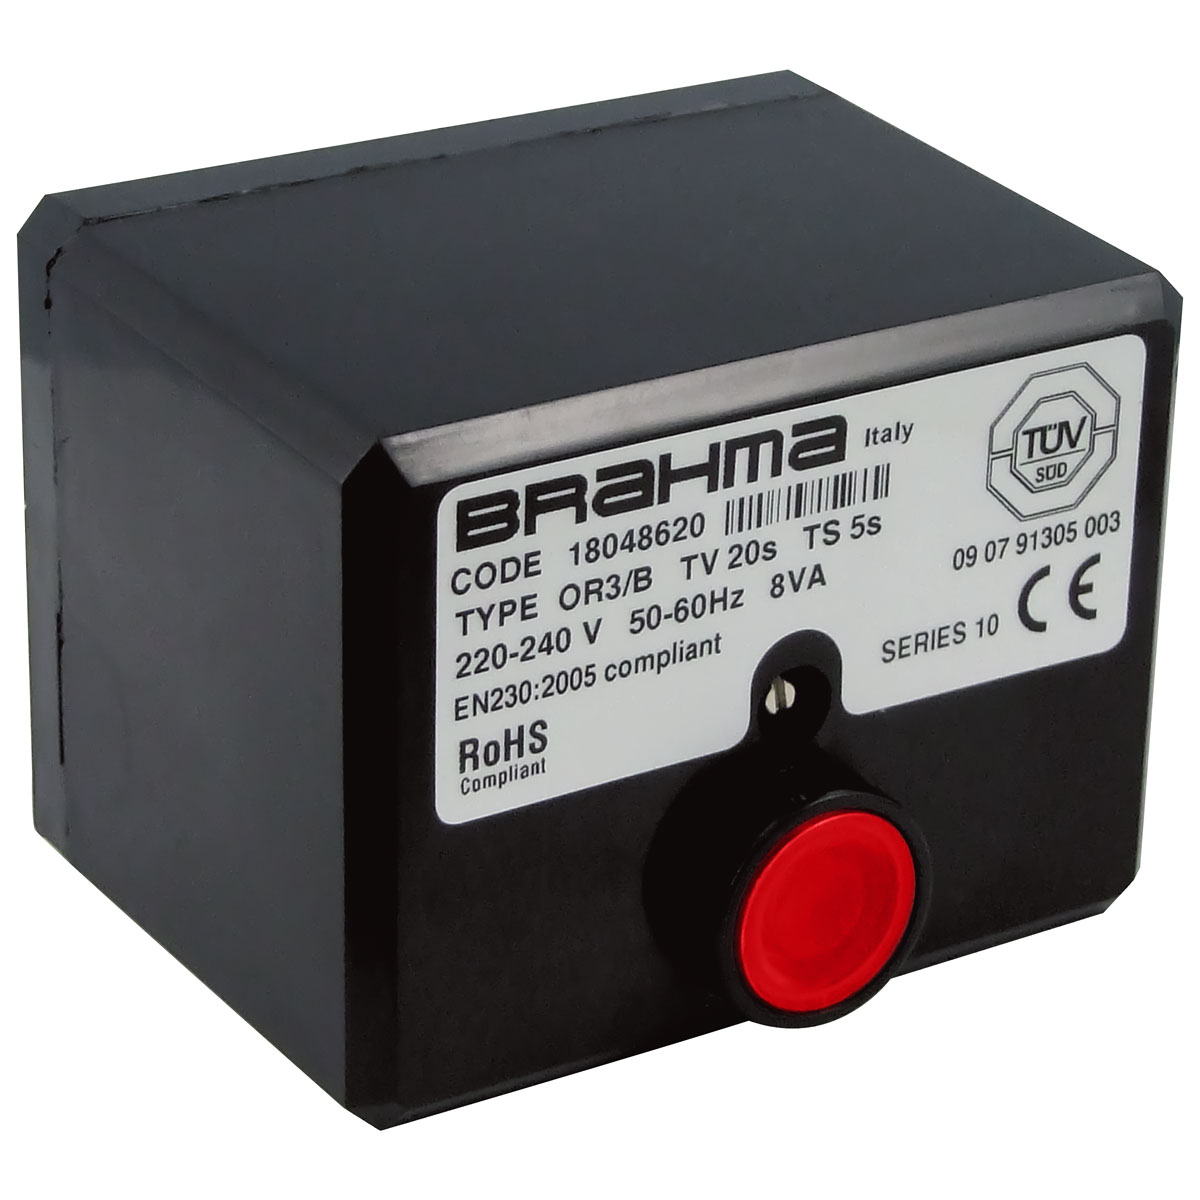 Brahma Control Box OR3/B 230v 50 / 60Hz C/W Base